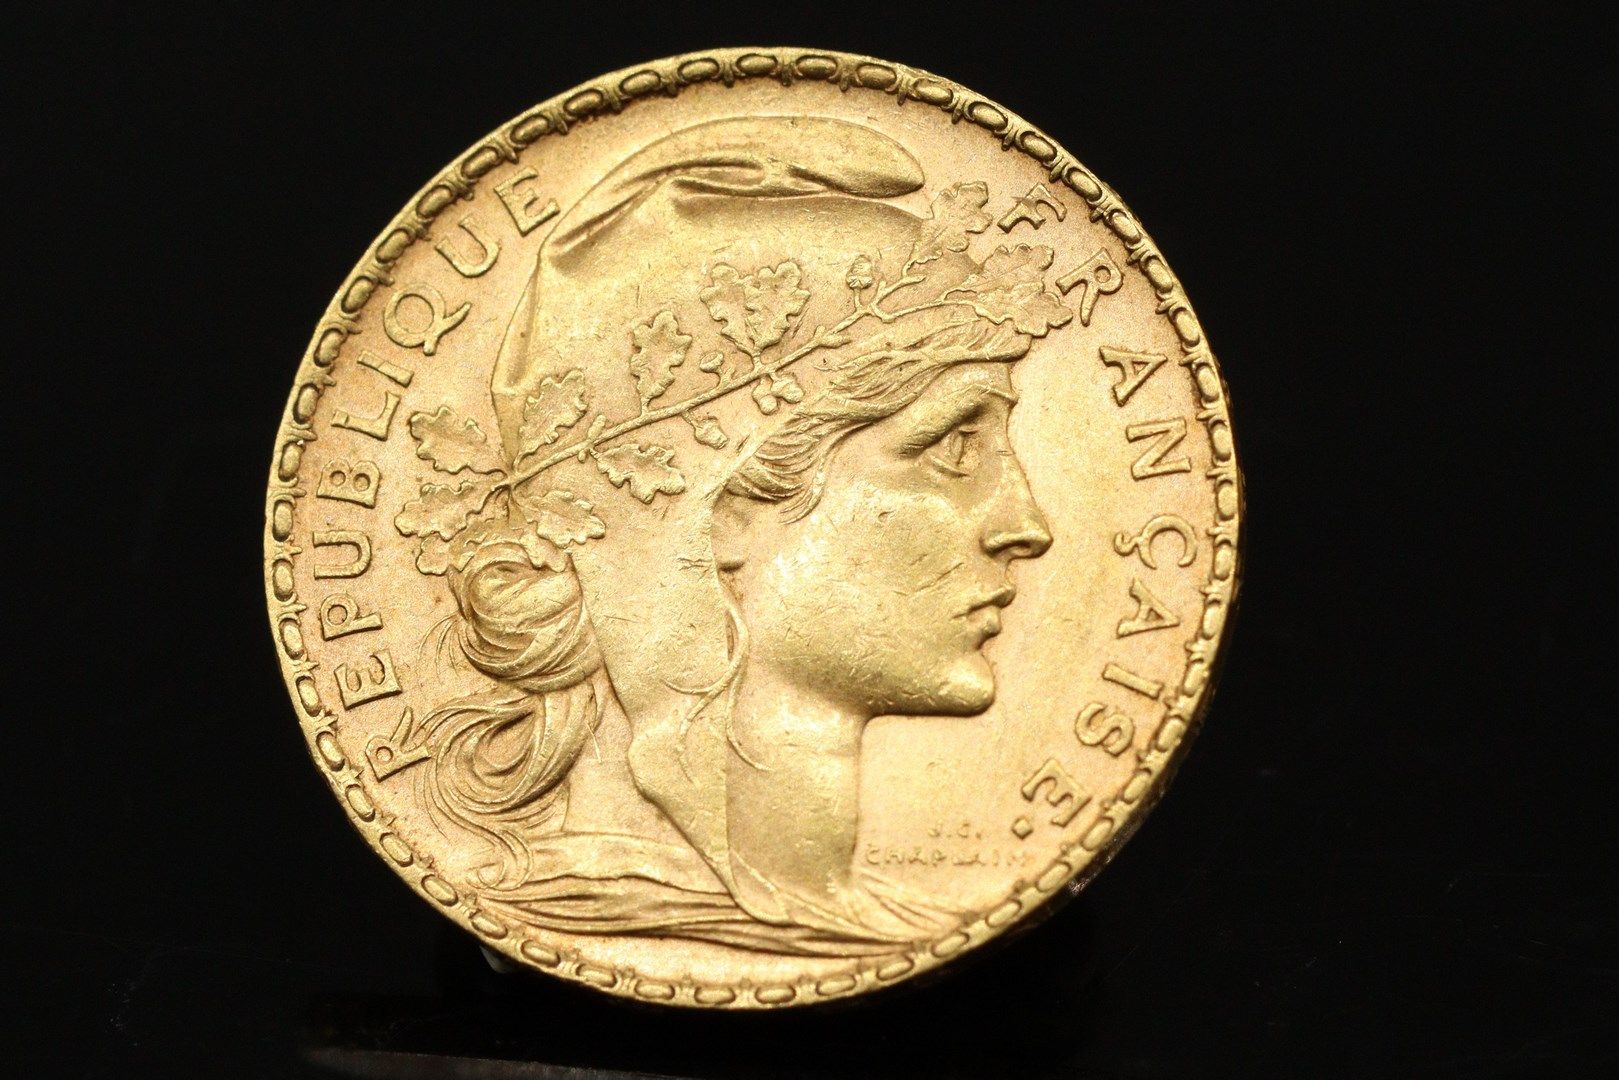 Null Moneda de oro de 20 francos con gallo (1902)

Peso: 6,46 g.